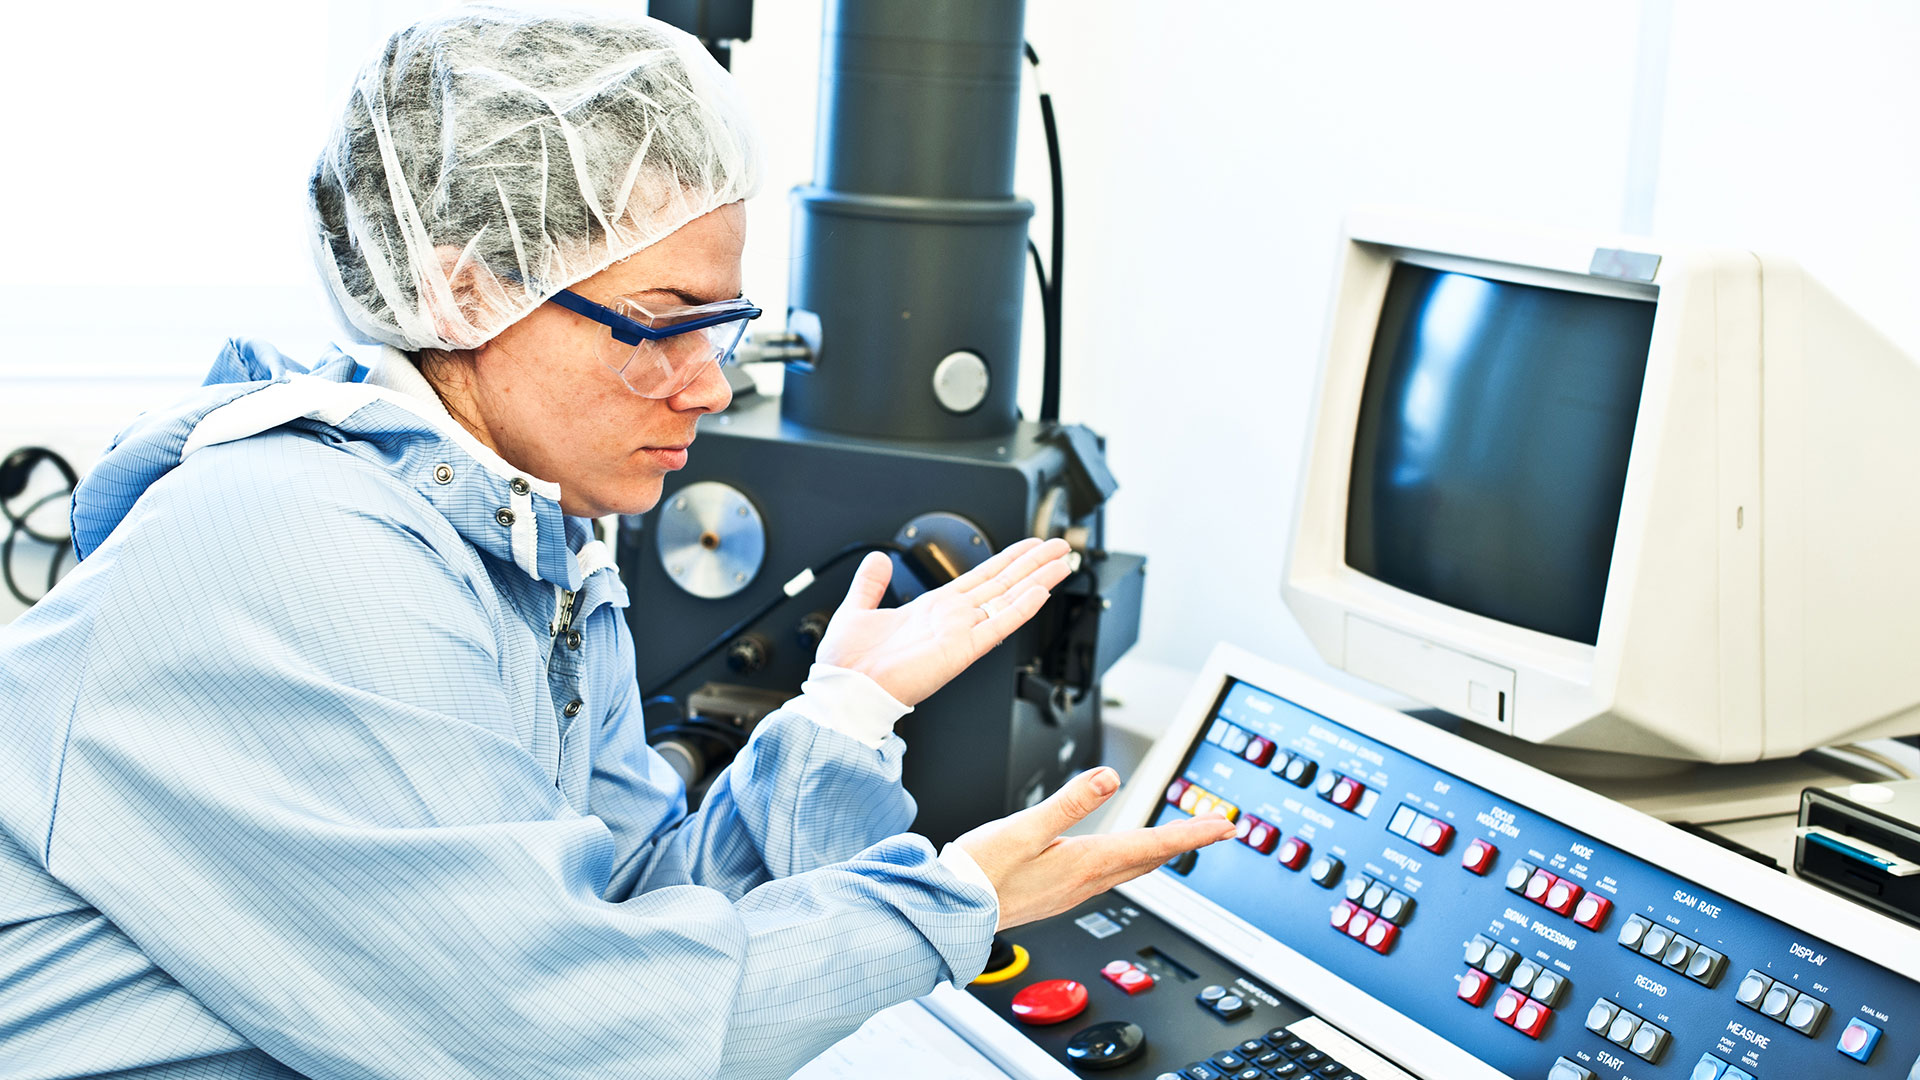 La investigación detectó quince sitios donde se usaron productos químicos para limpiar componentes electrónicos y chips de computadora (iStock)